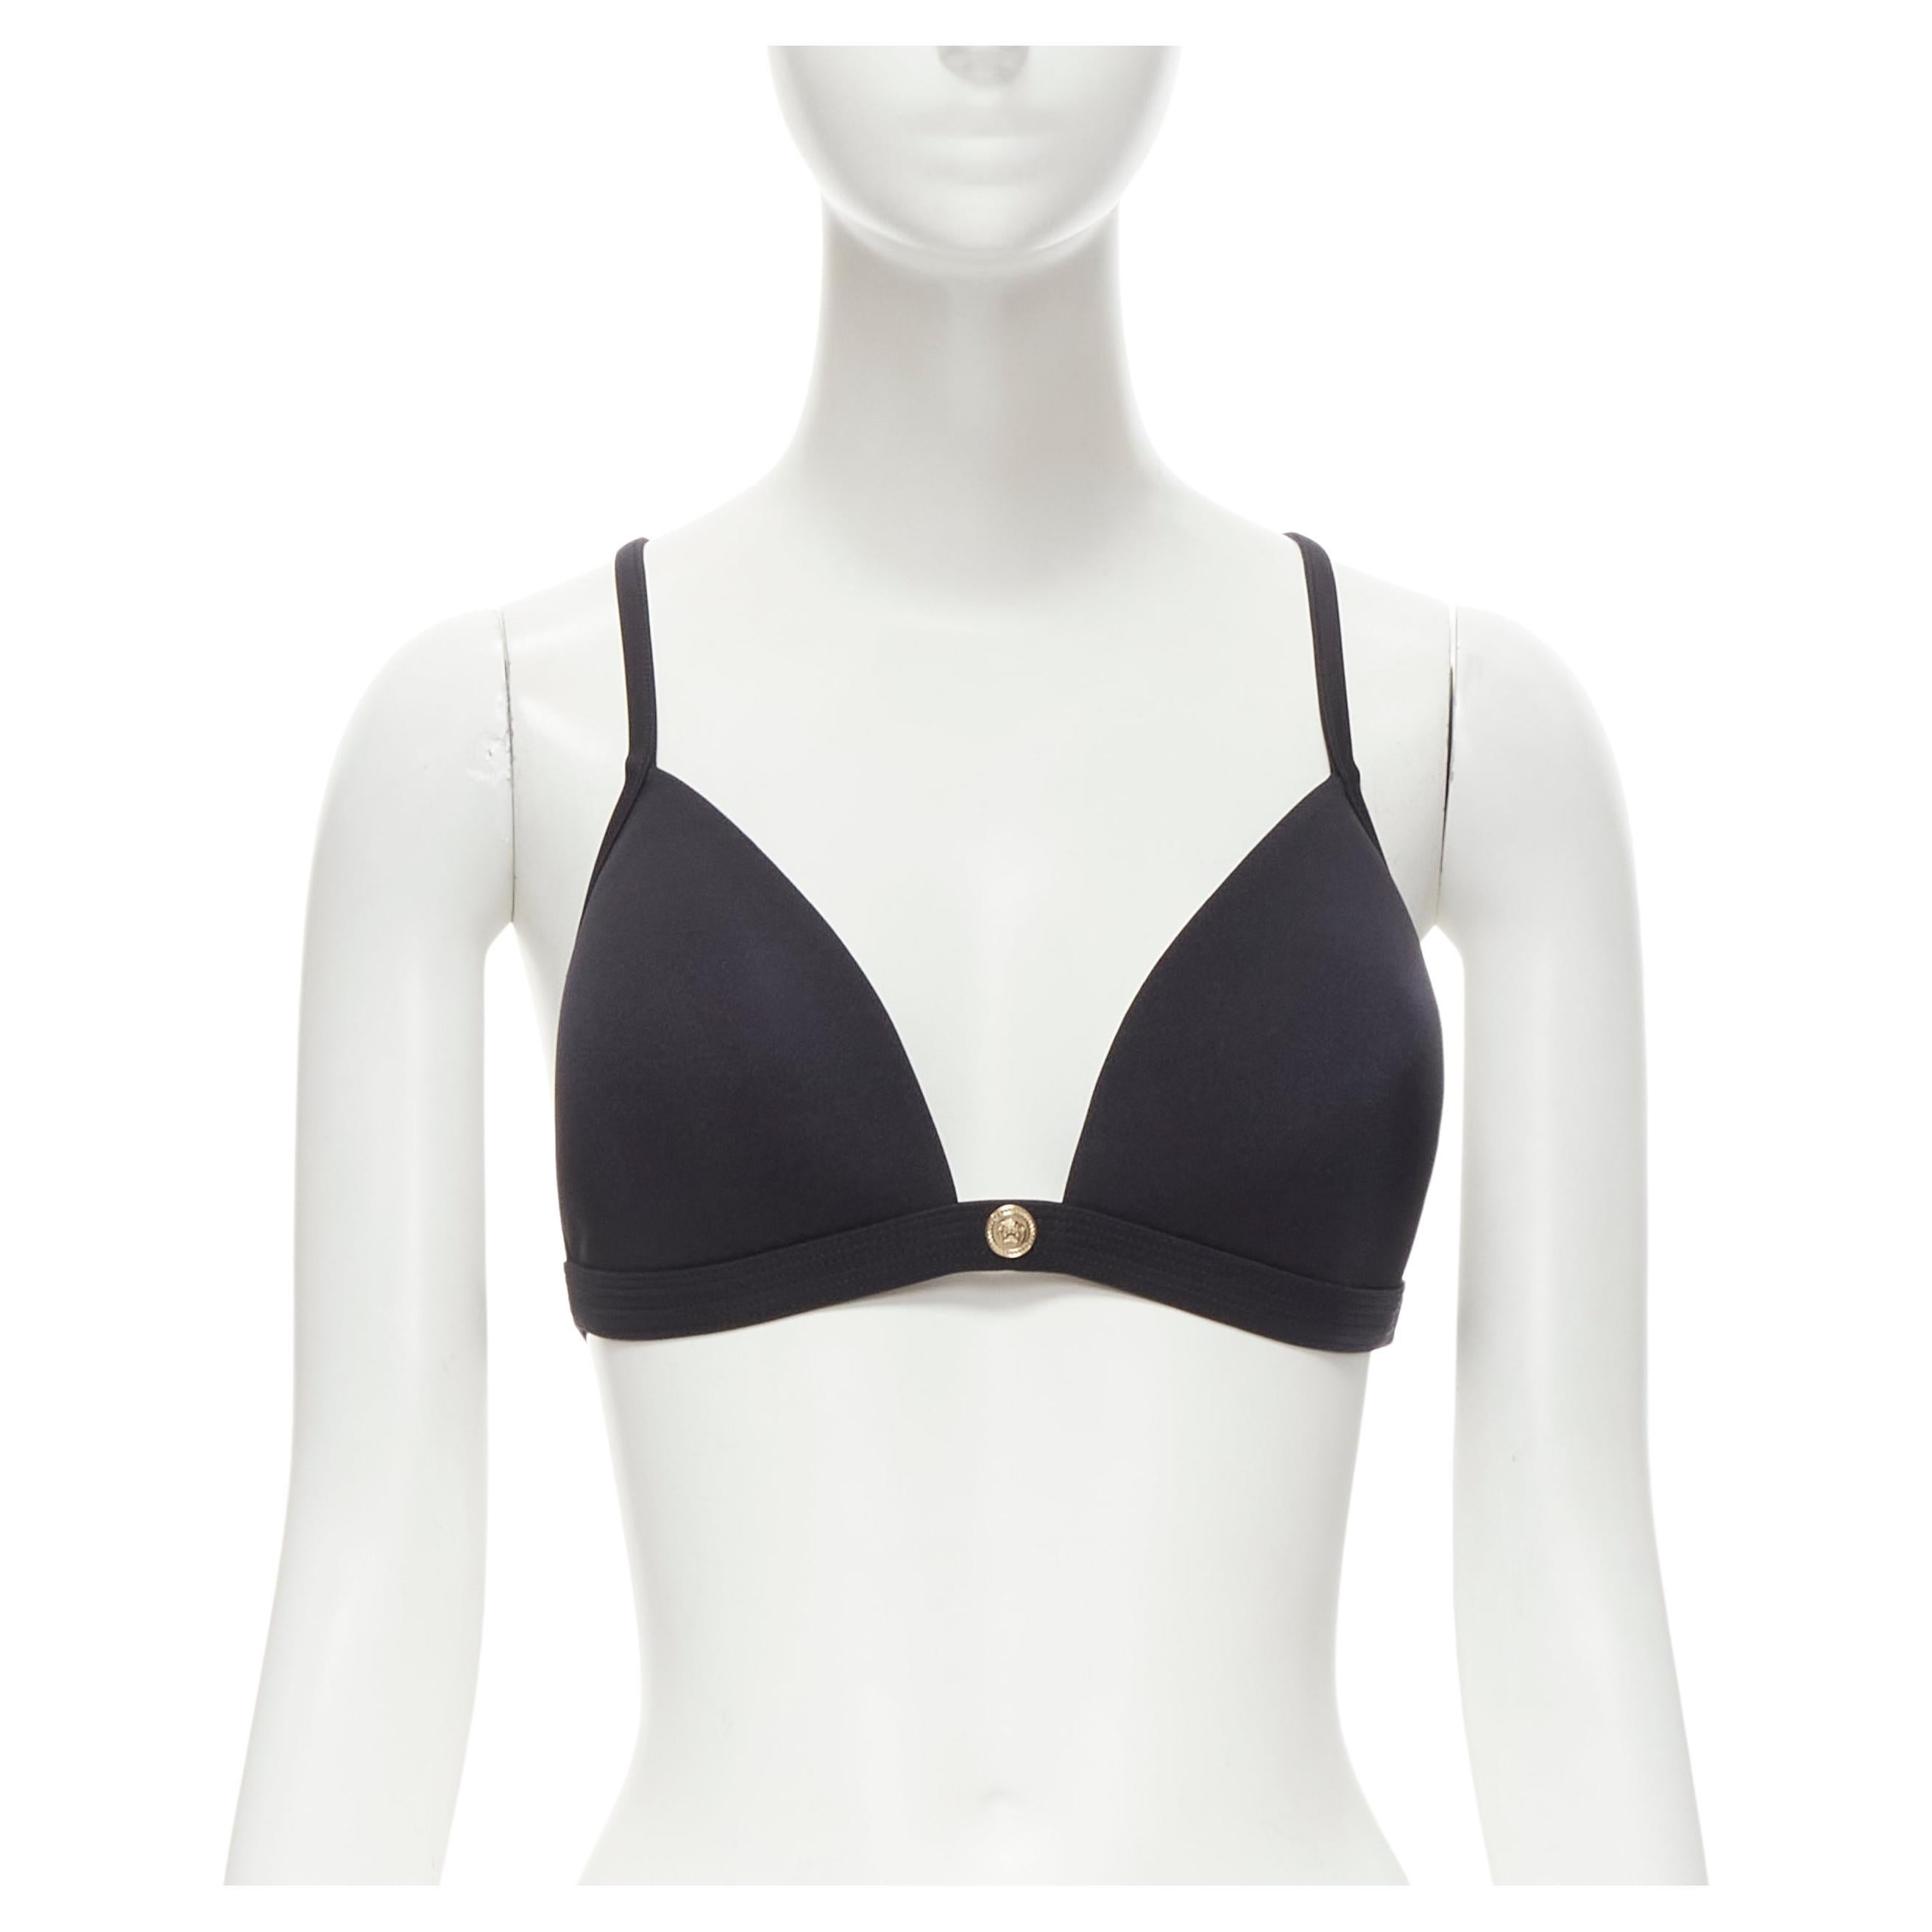 VERSACE Strandbekleidung schwarz gepolstertes goldenes Medusa- Bikini-Top mit Knopfleiste Gr.4 M